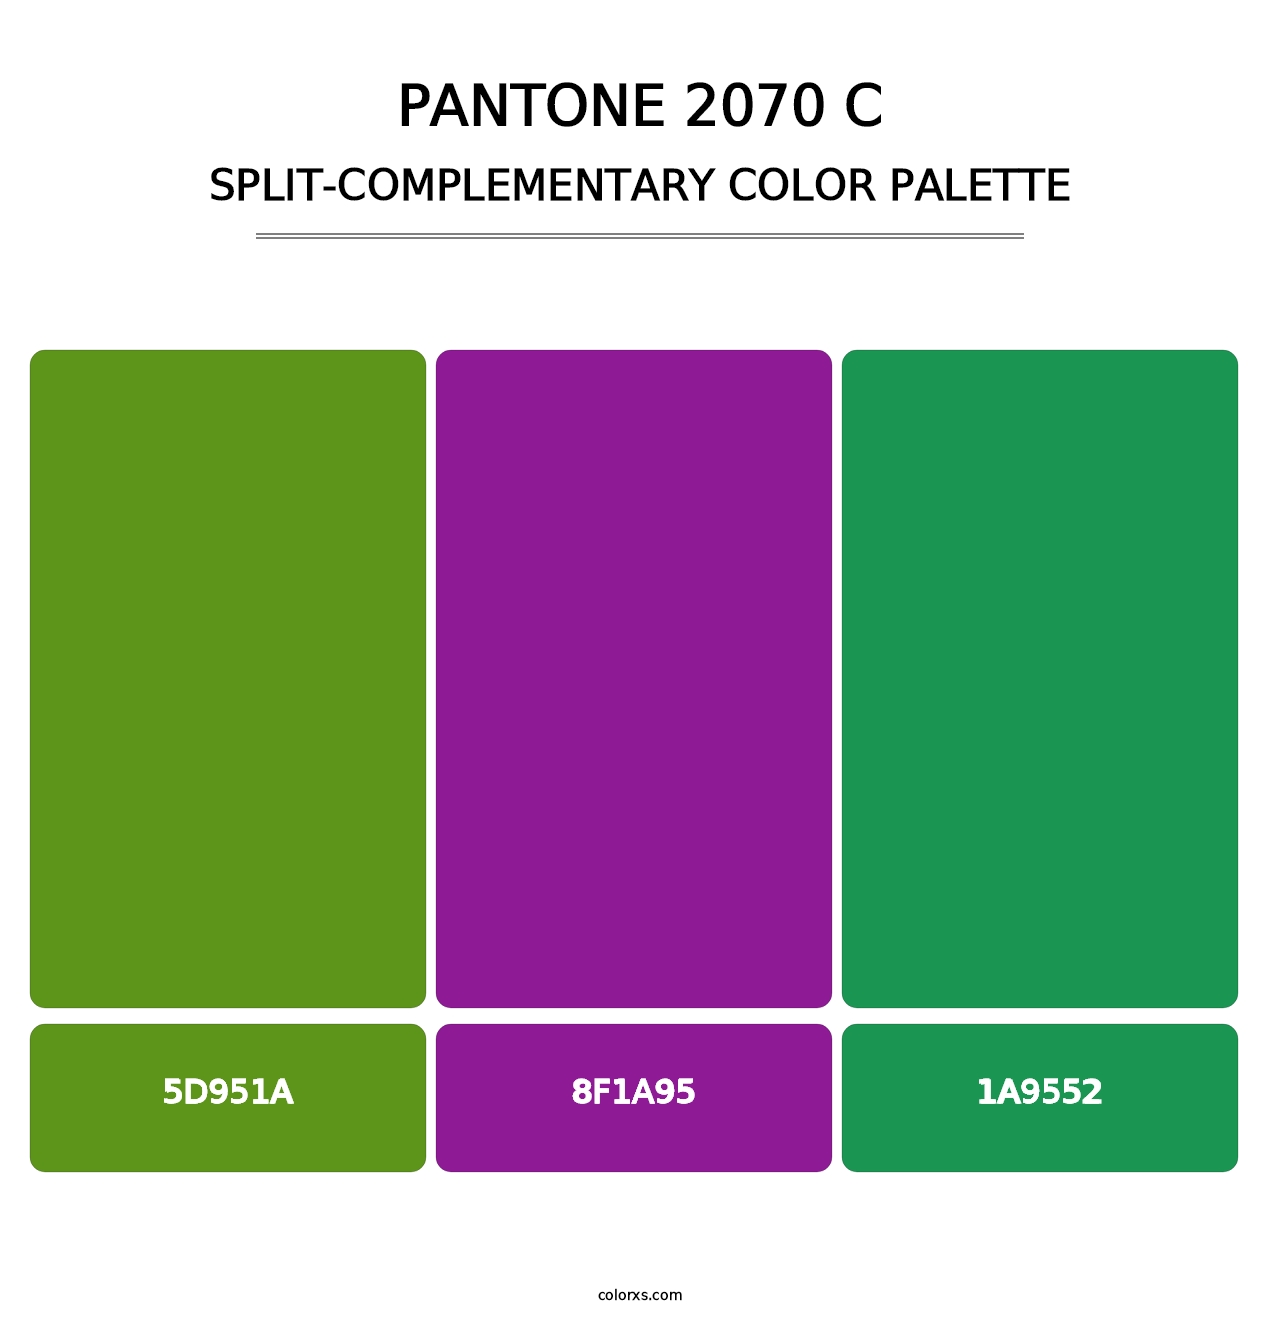 PANTONE 2070 C - Split-Complementary Color Palette